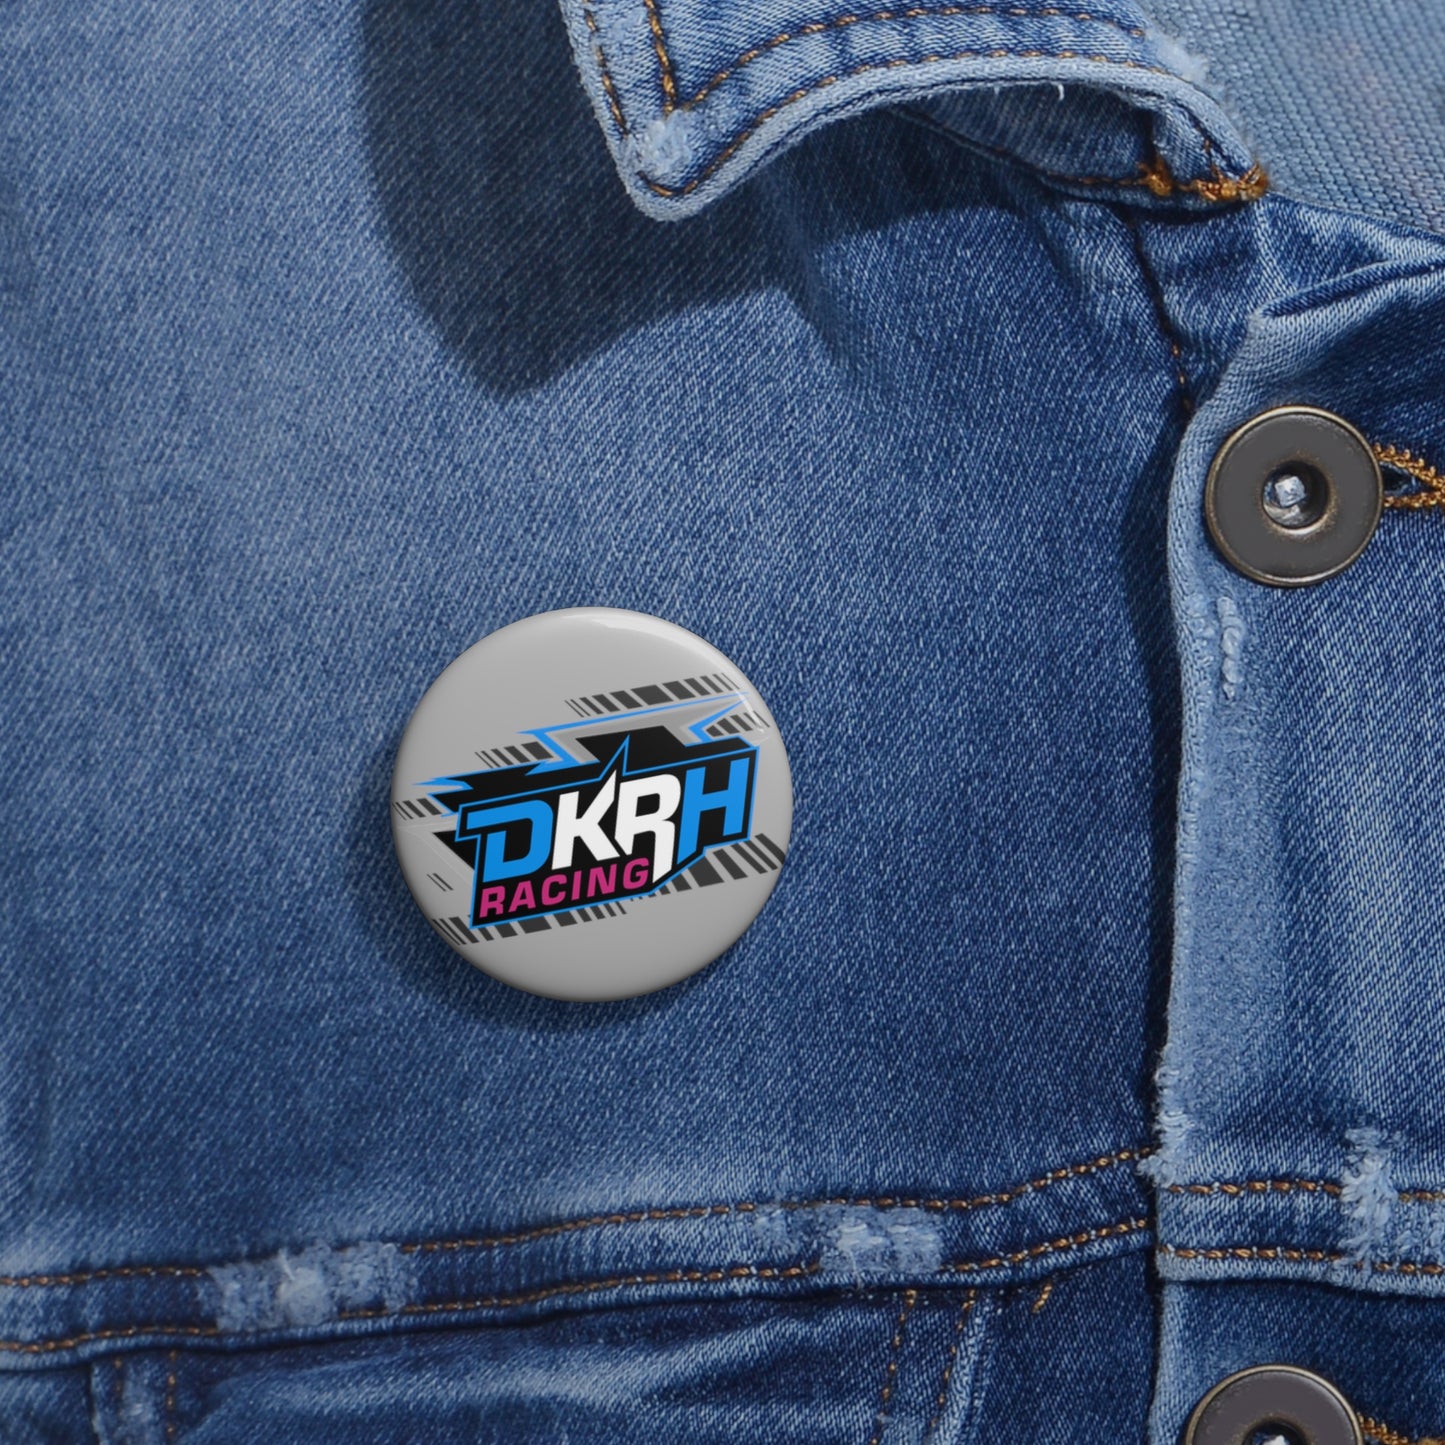 DKRH Pin Buttons